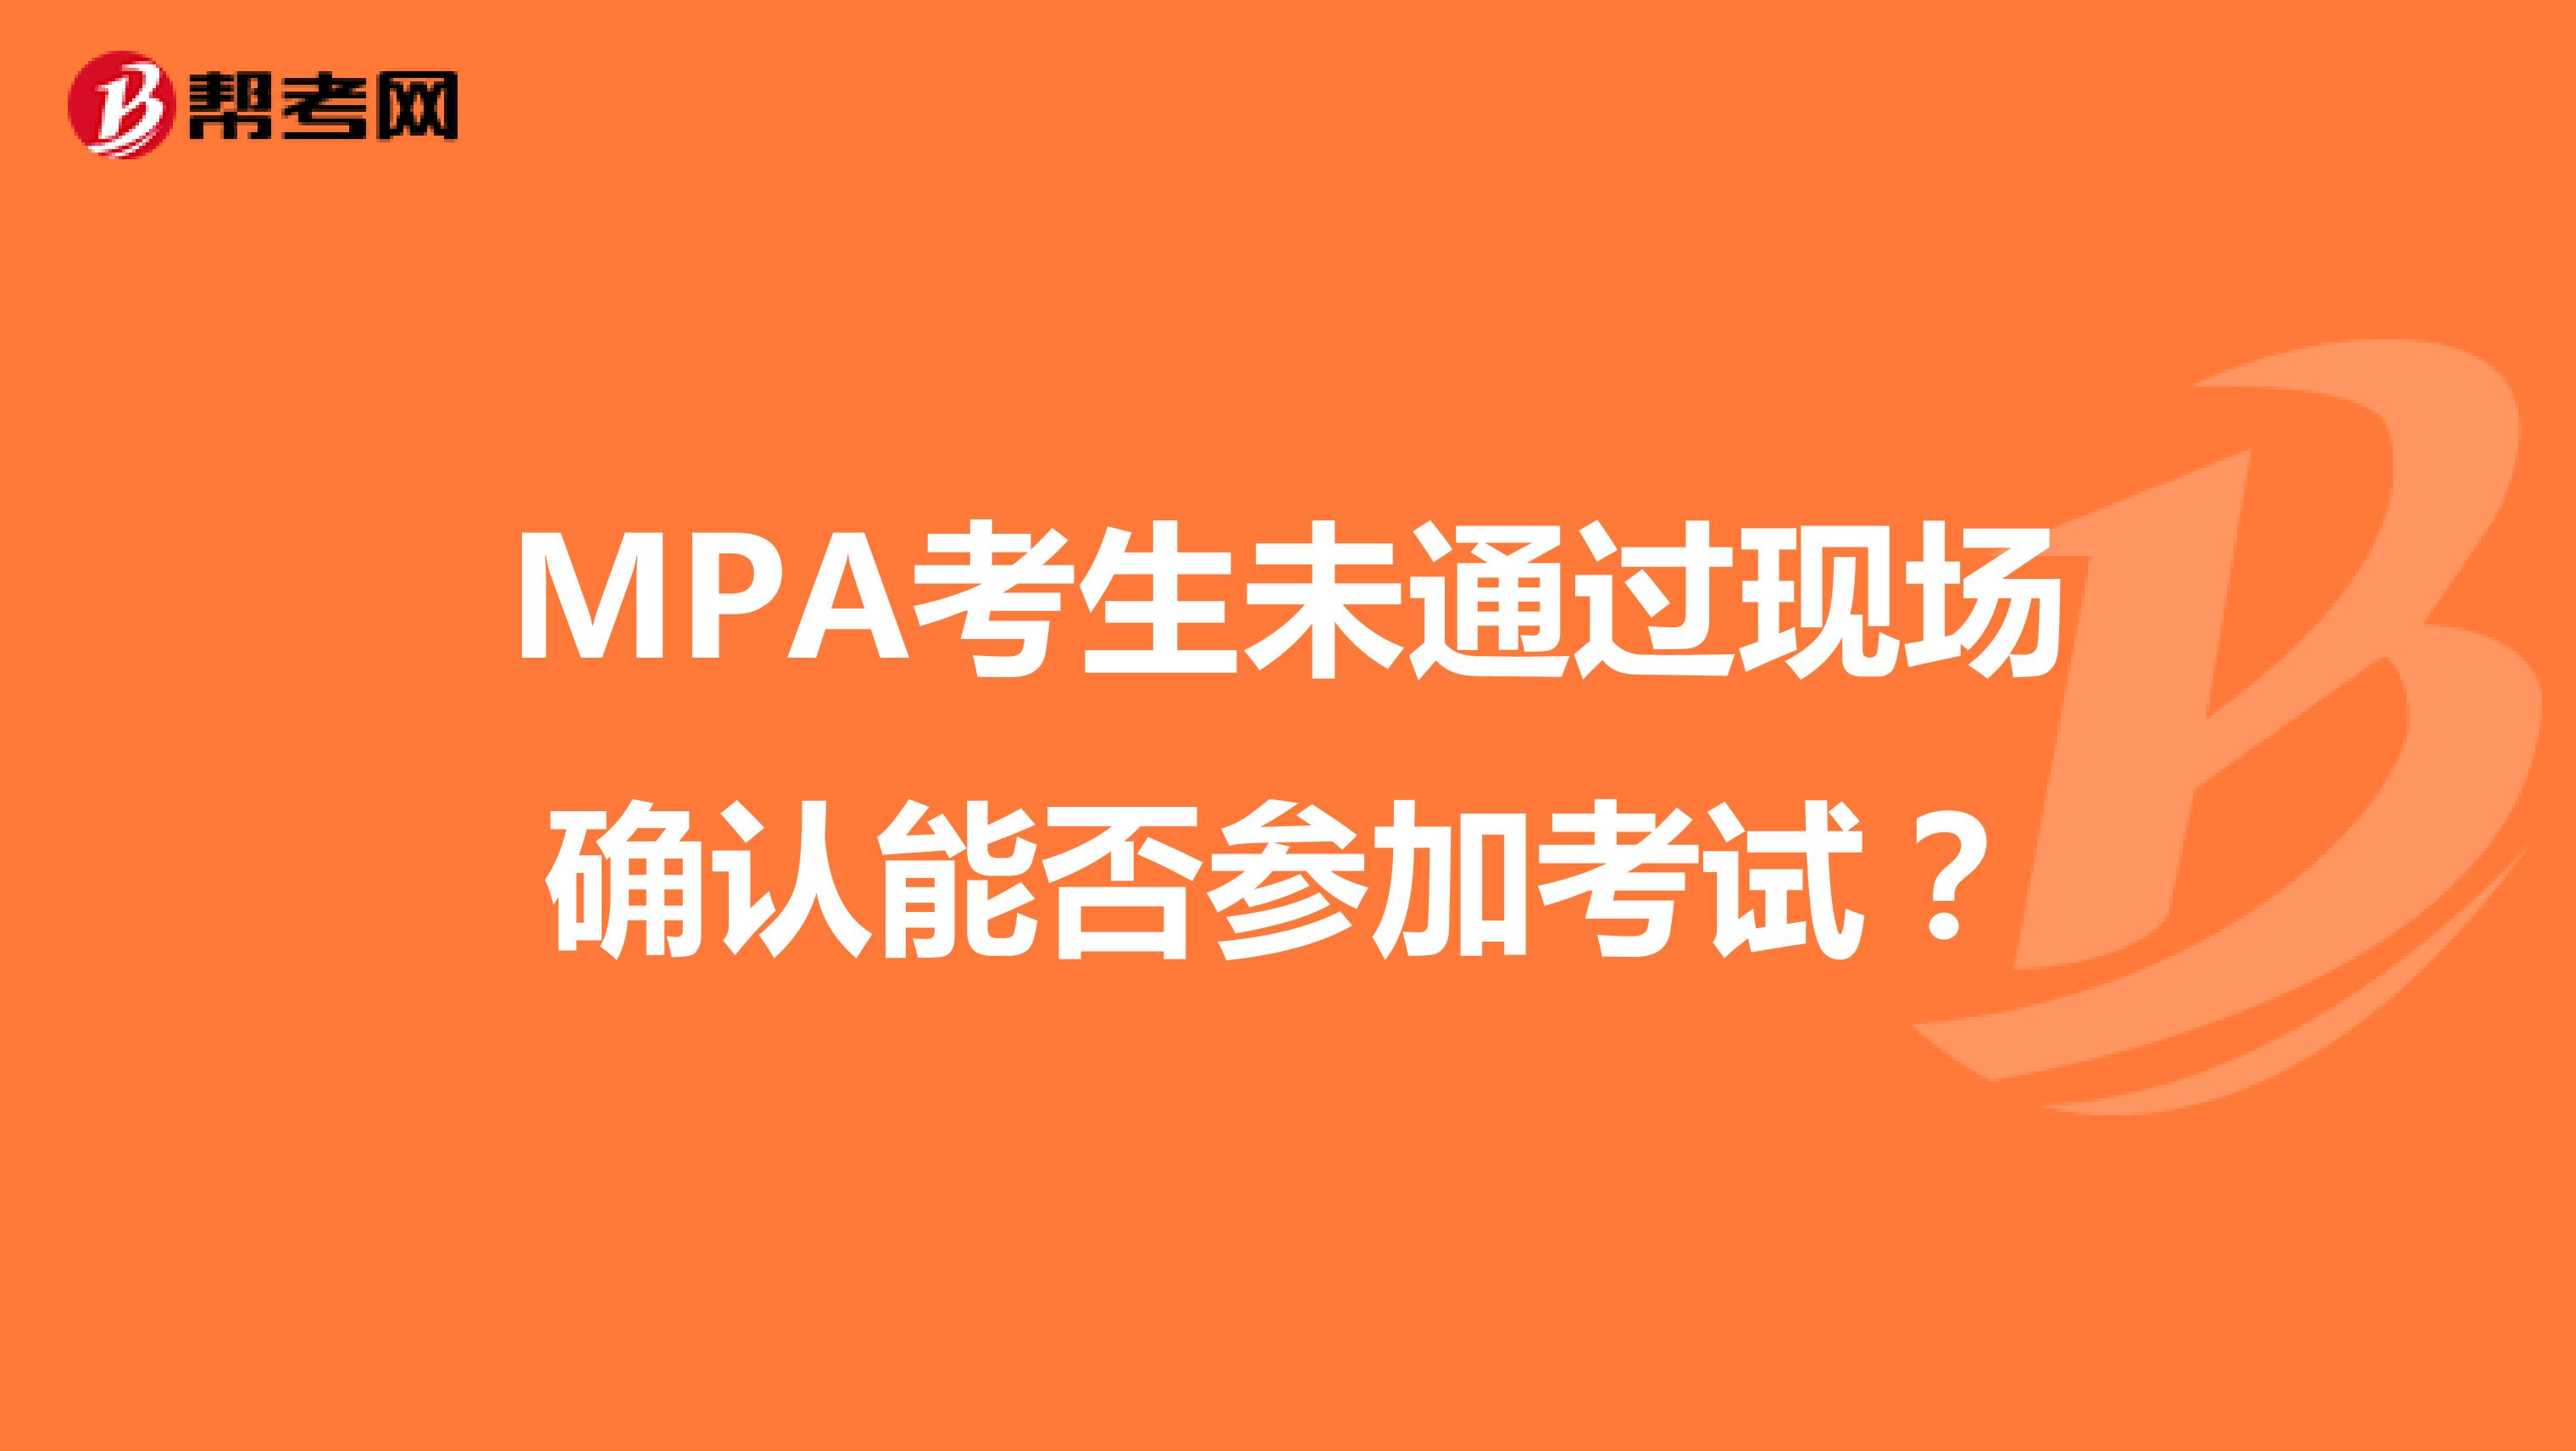 MPA考生未通过现场确认能否参加考试？